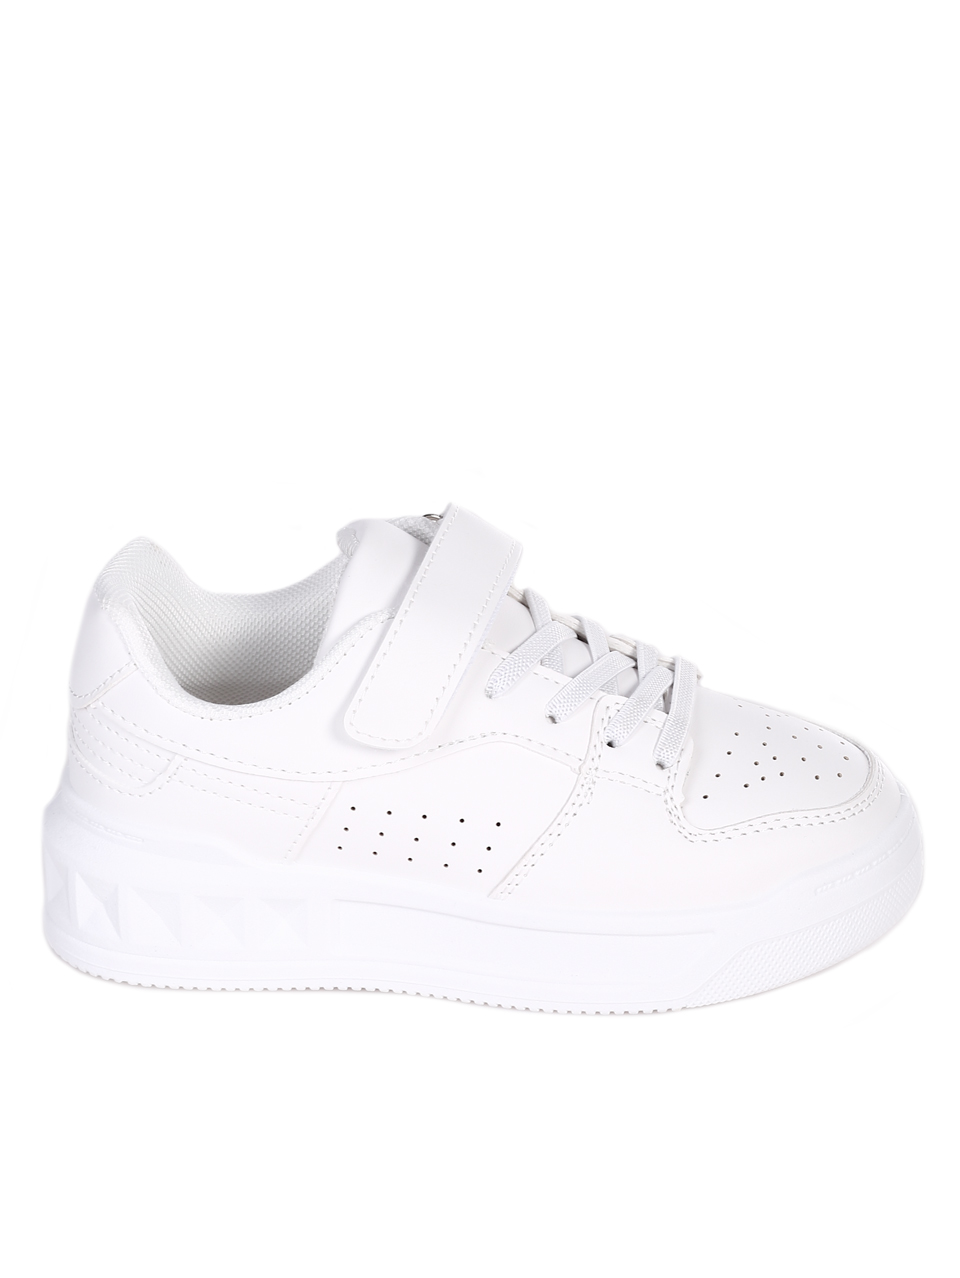 Комфортни детски обувки в бяло 18U-24082 white